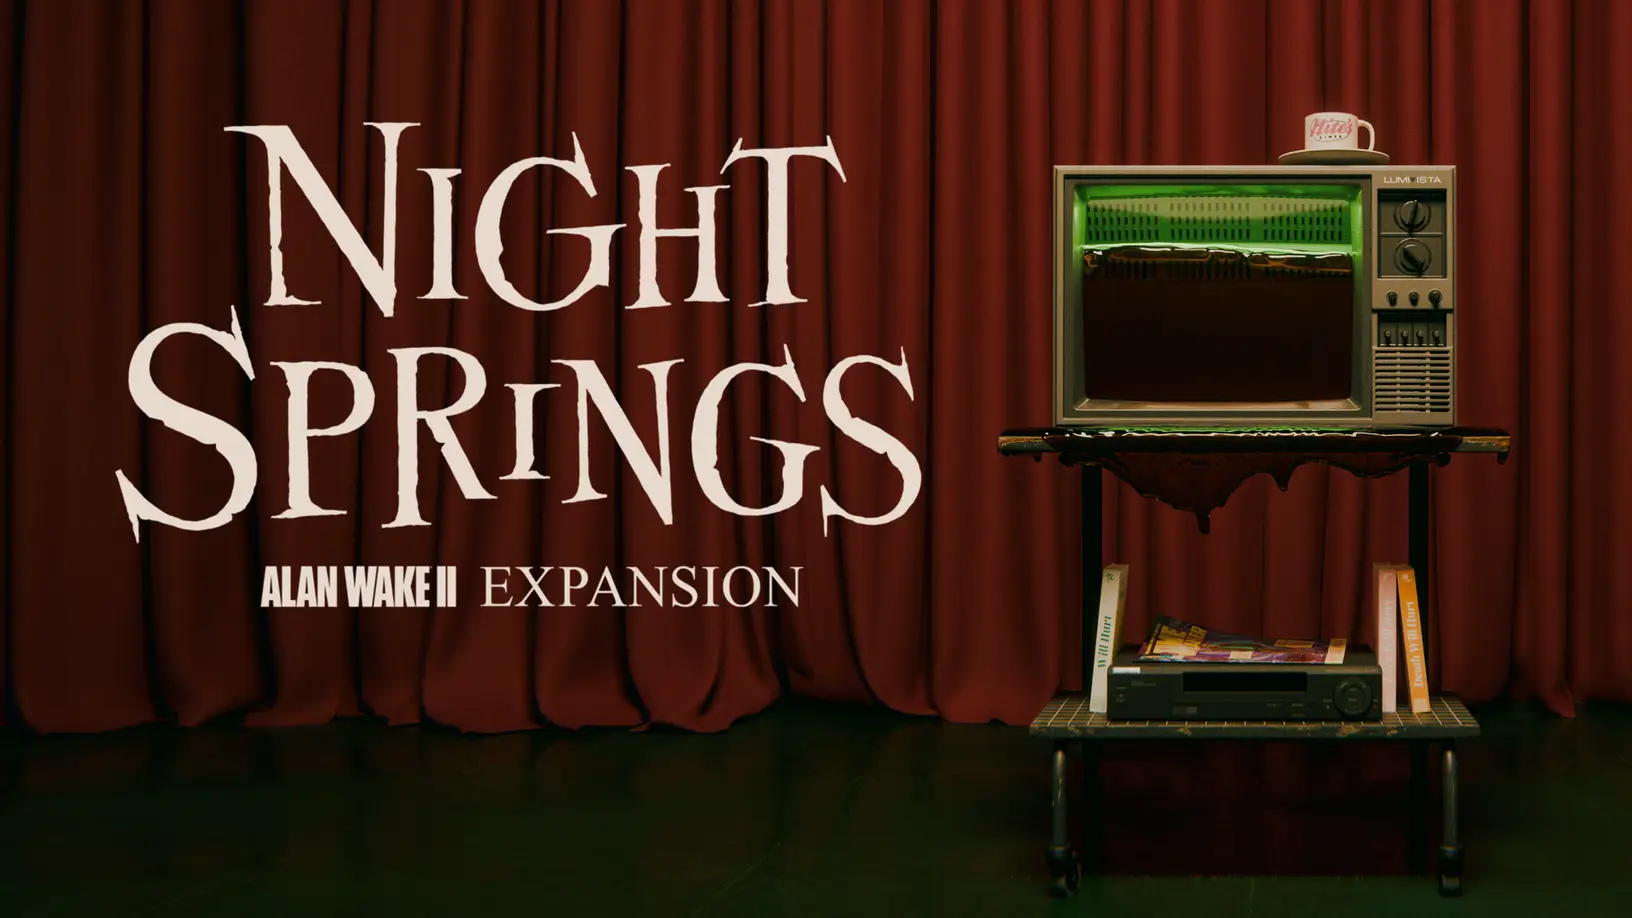 Am 8. Juni veröffentlichte Remedy Night Springs, das erste Erweiterungspaket für Alan Wake 2, in dem wir als 3 verschiedene Charaktere spielen werden